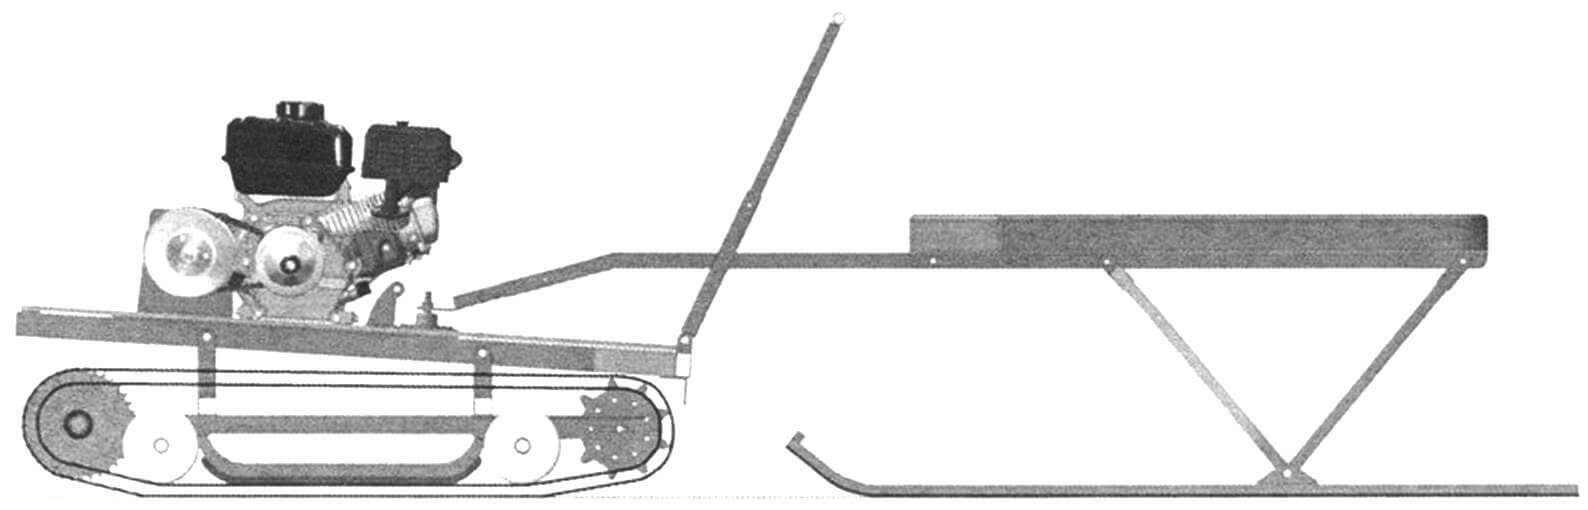 «Тритон»-трансформер - вариант использования моторно-гусеничного блока с приводом на передний вал